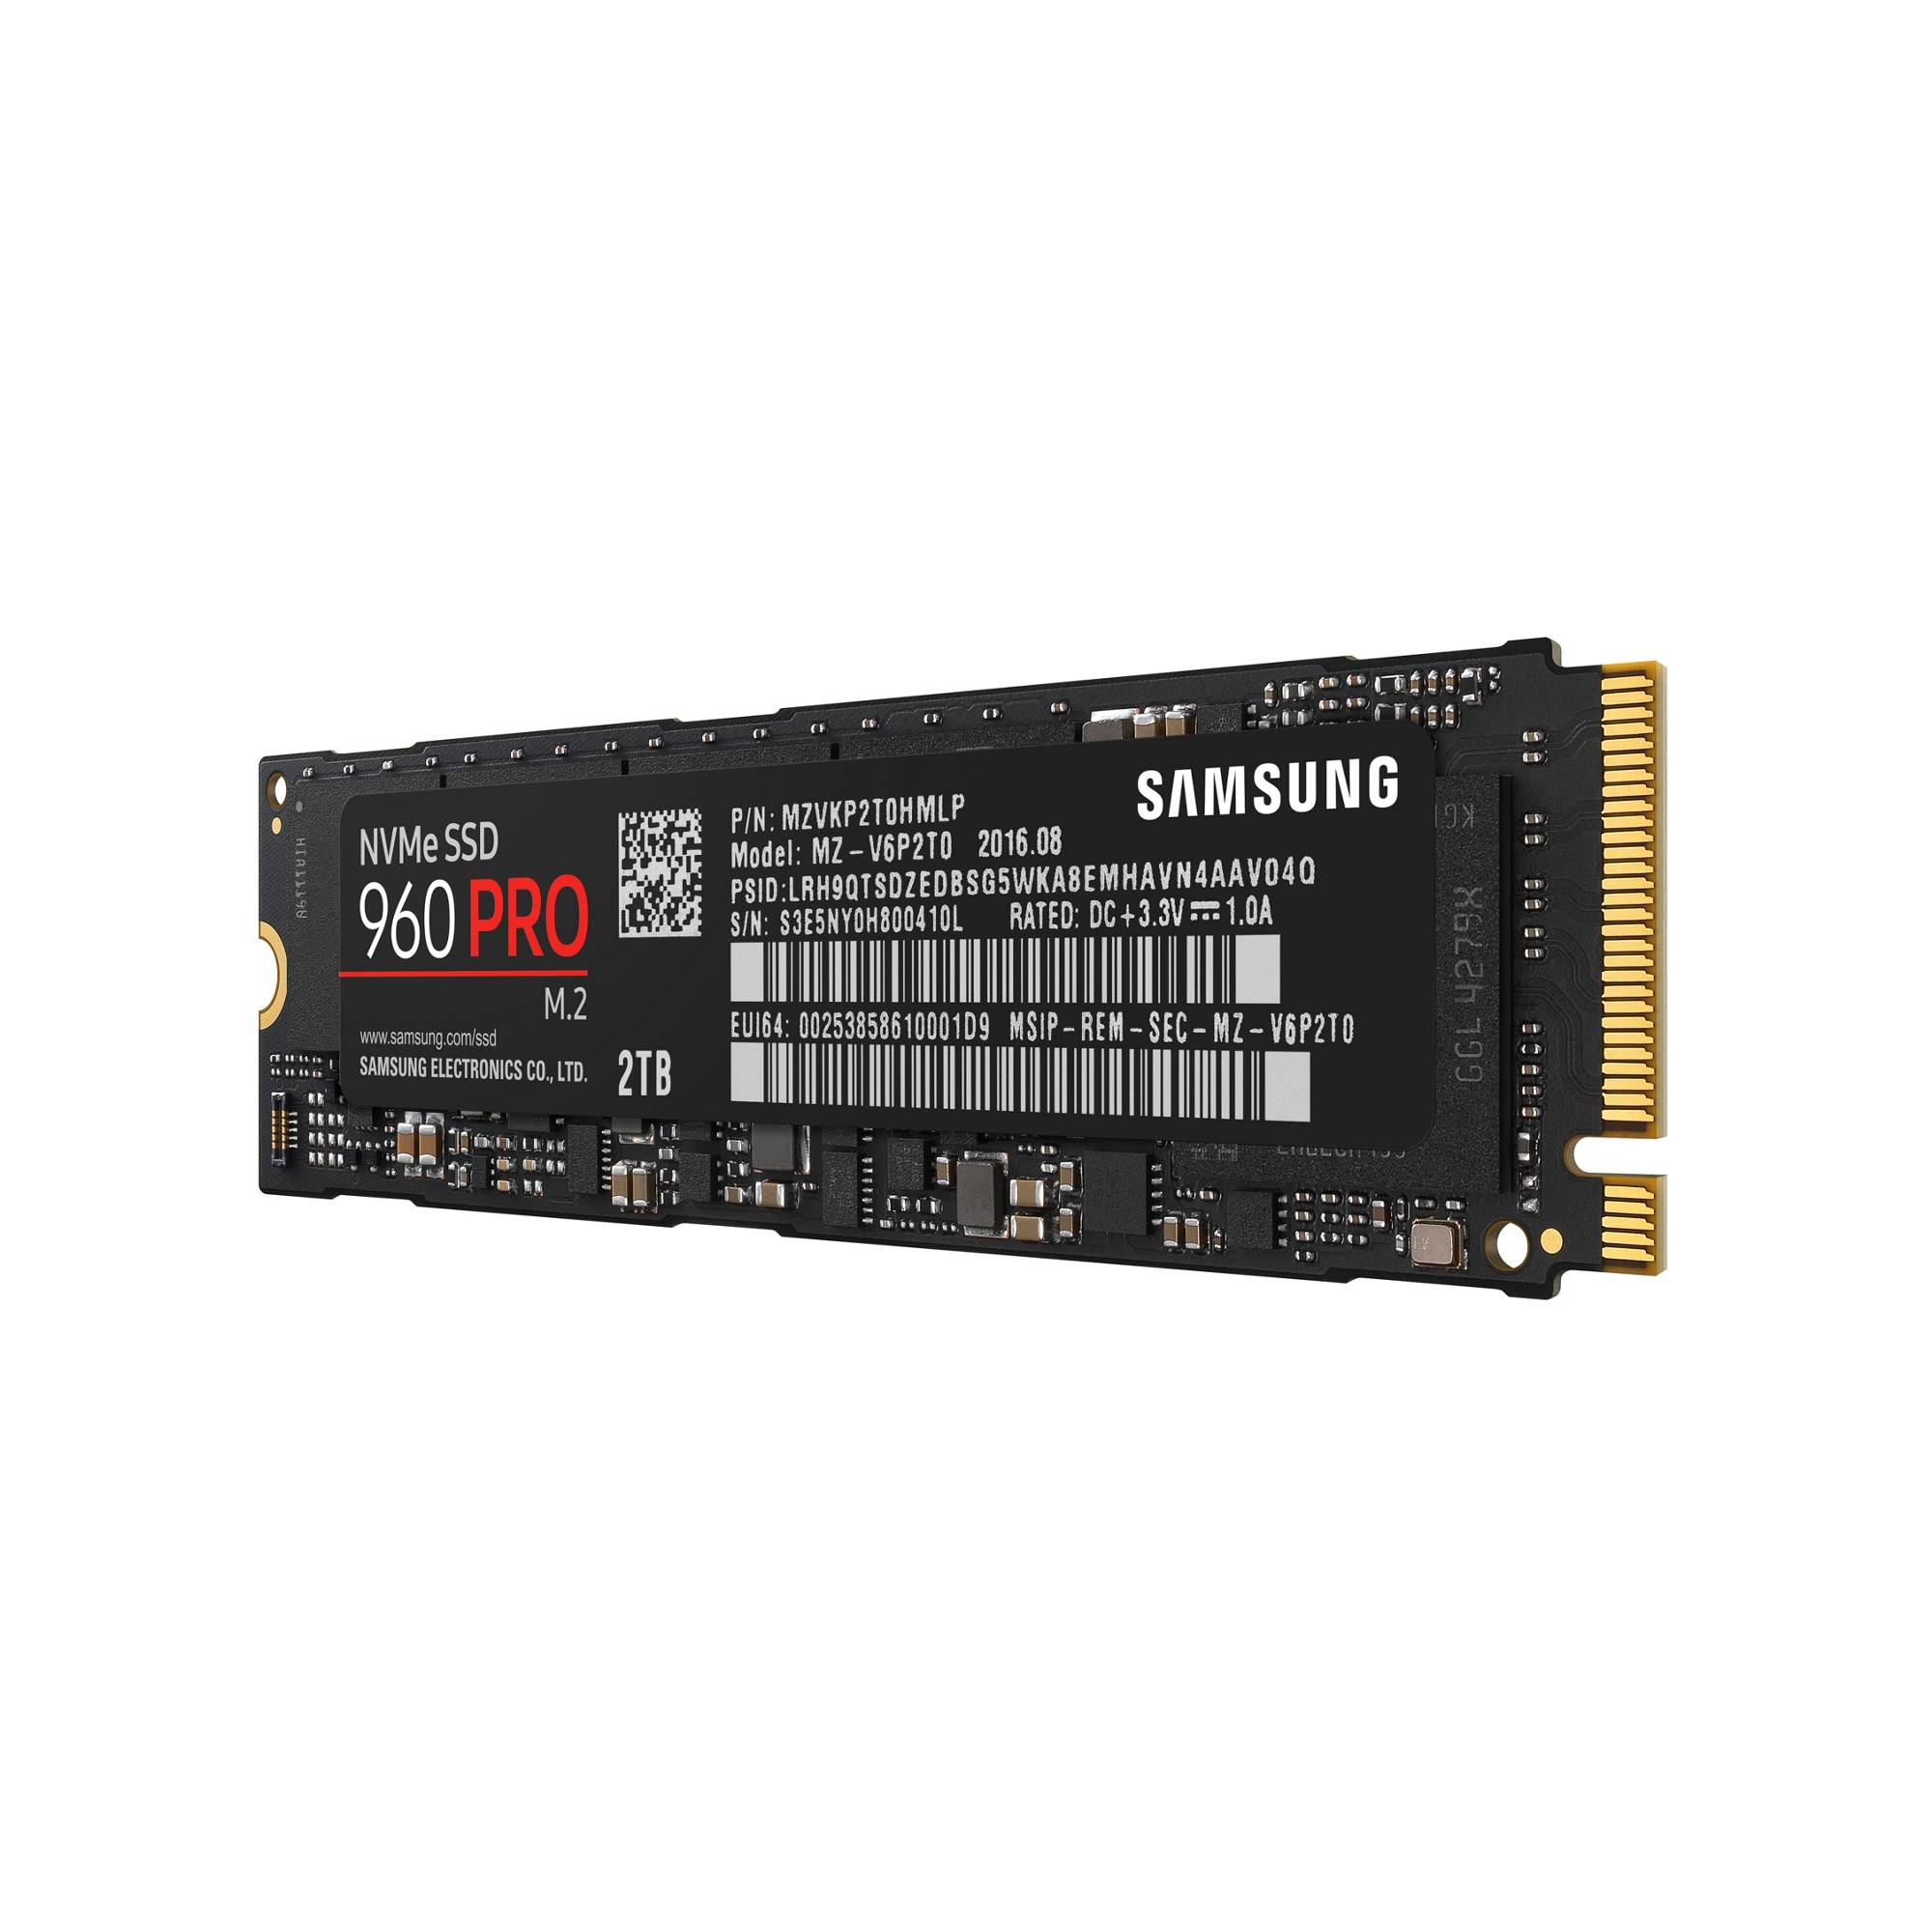 NEMIX RAM 64GB DDR4-2933 PC4-23400 ECC RDIMM レジスタードサーバー